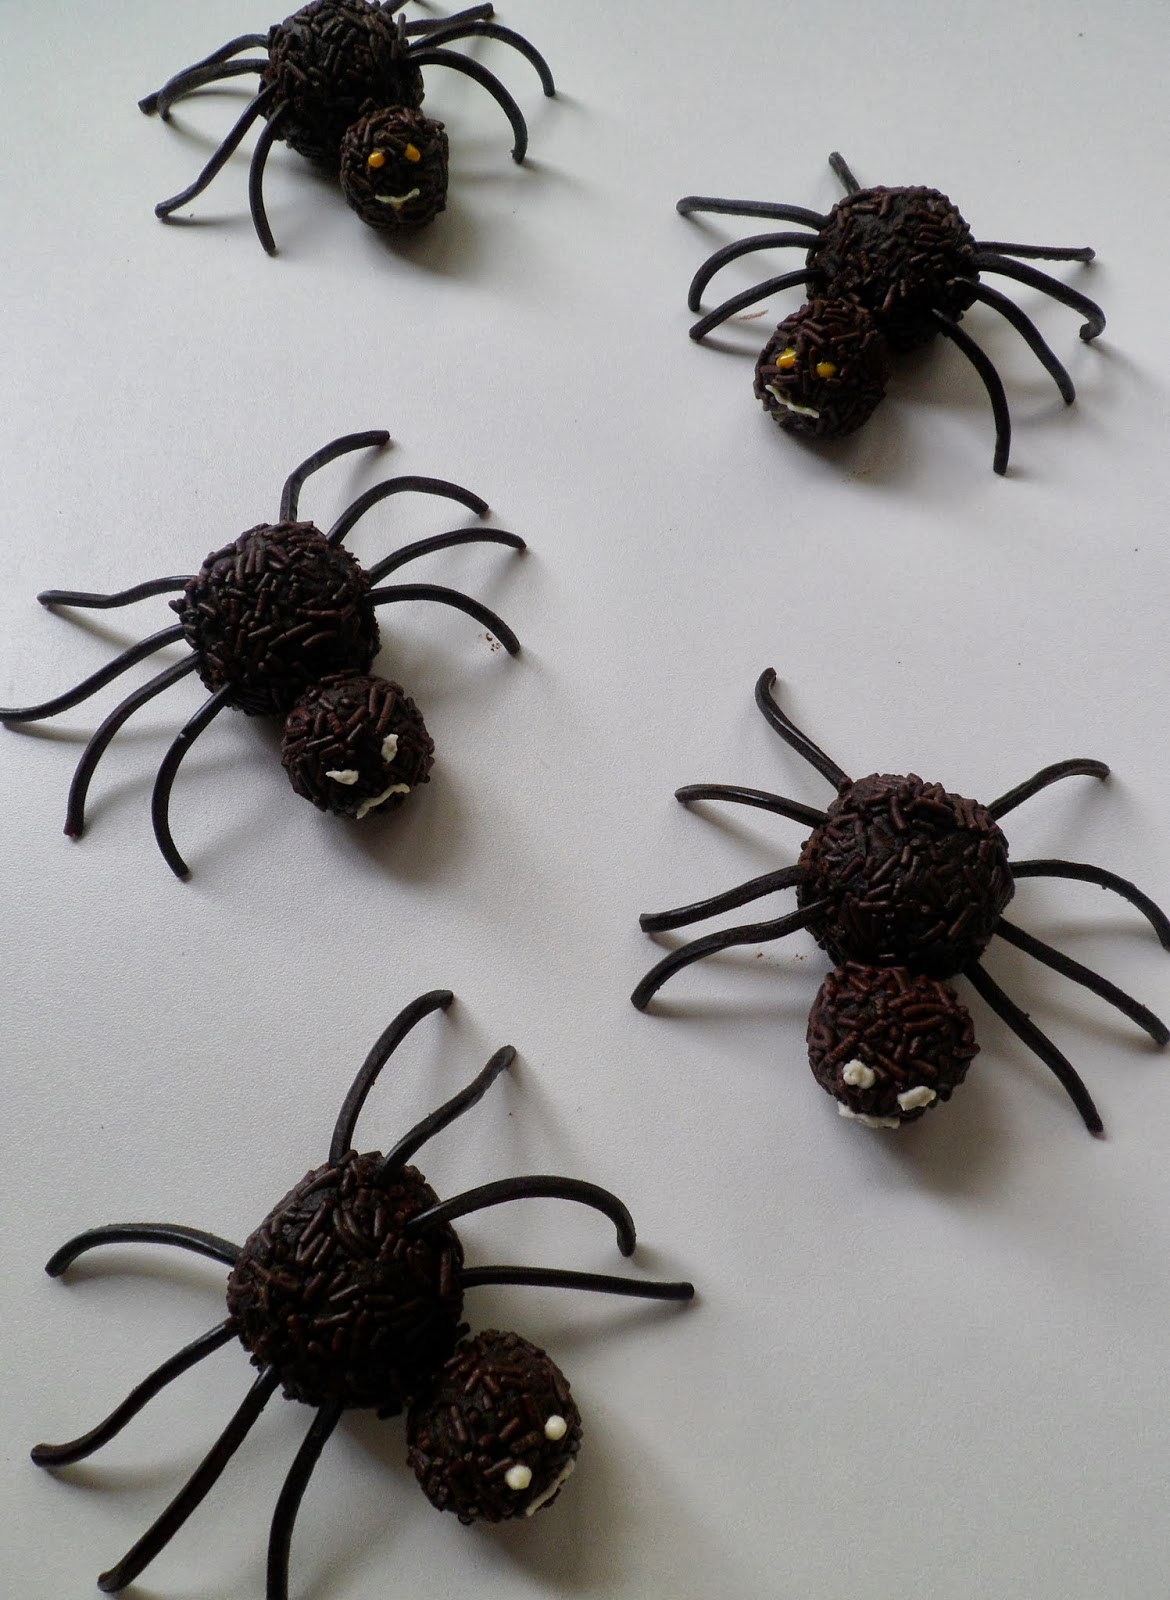 Schokoladen Spinnen — Rezepte Suchen